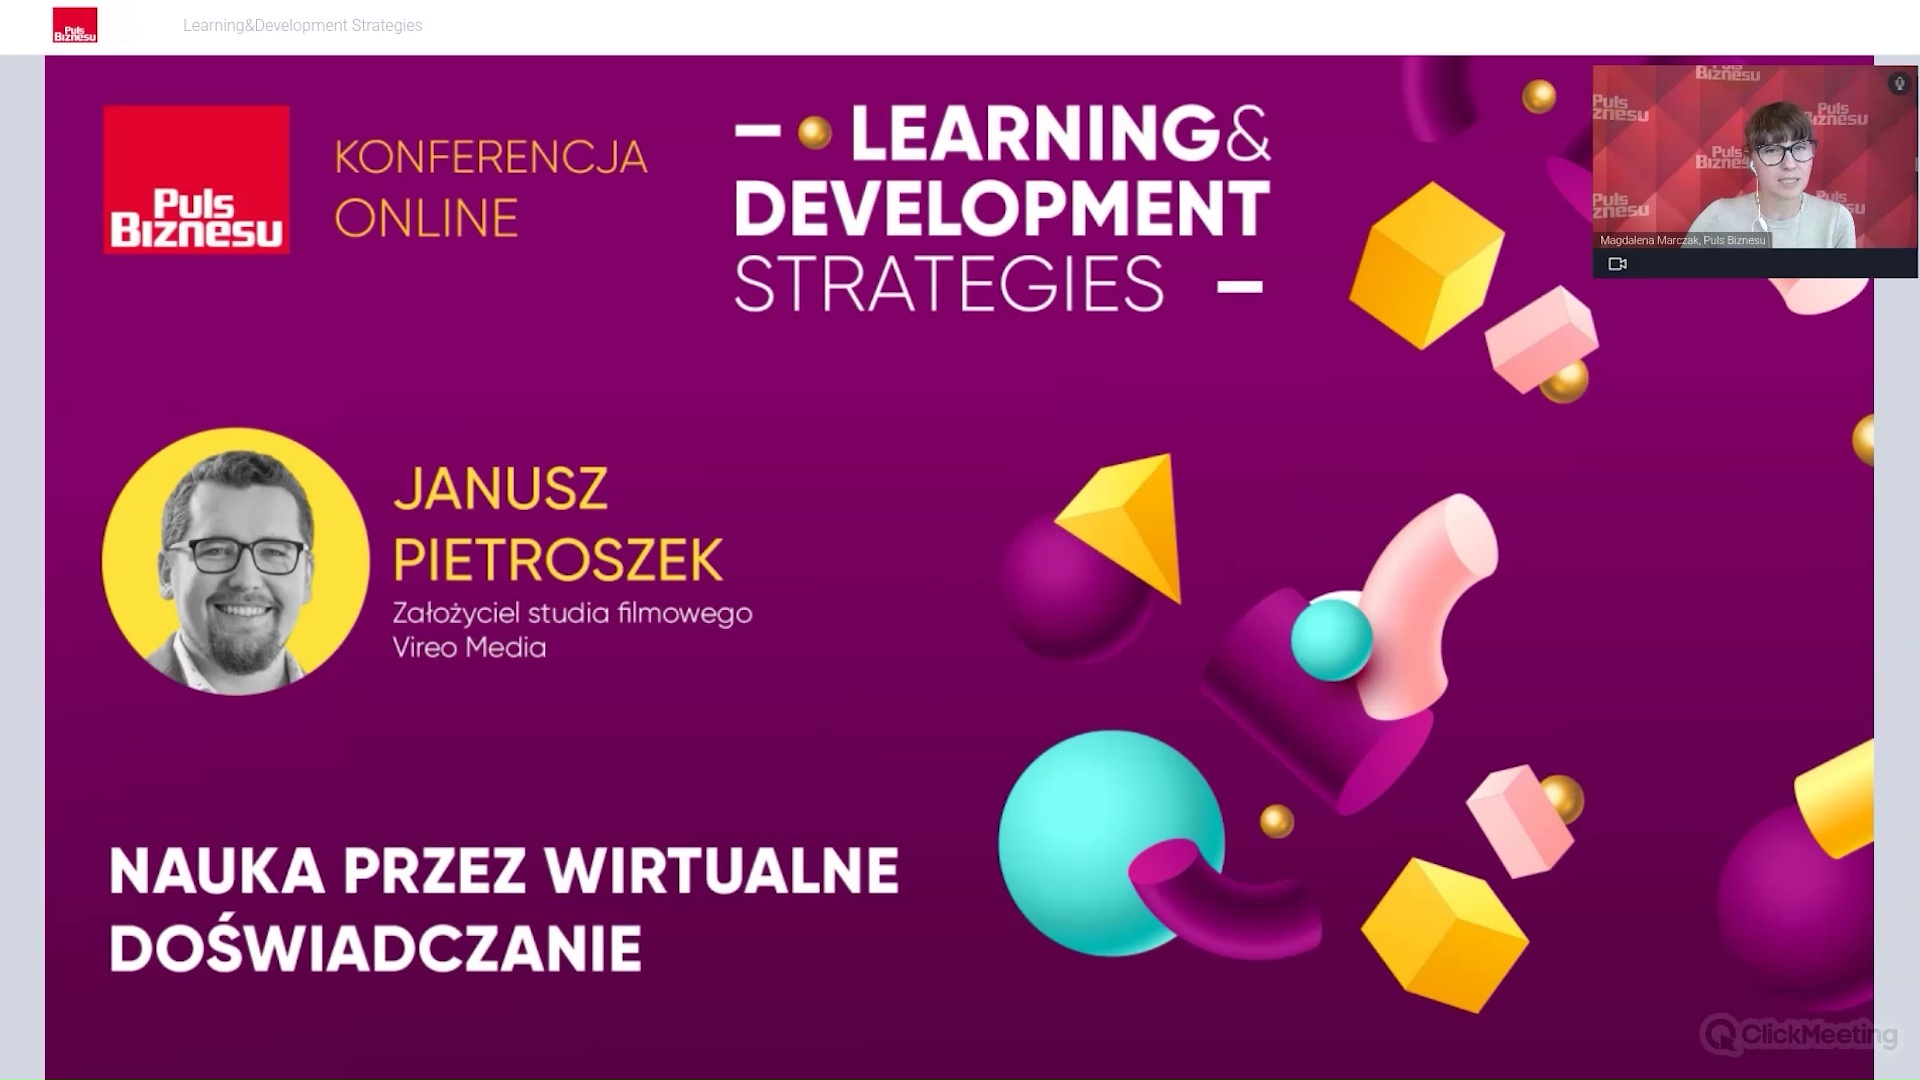 Nauka przez wirtualne doświadczenie – fragmenty prelekcji podczas konferencji Learning & Development Strategies organizowanej przez Puls Biznesu